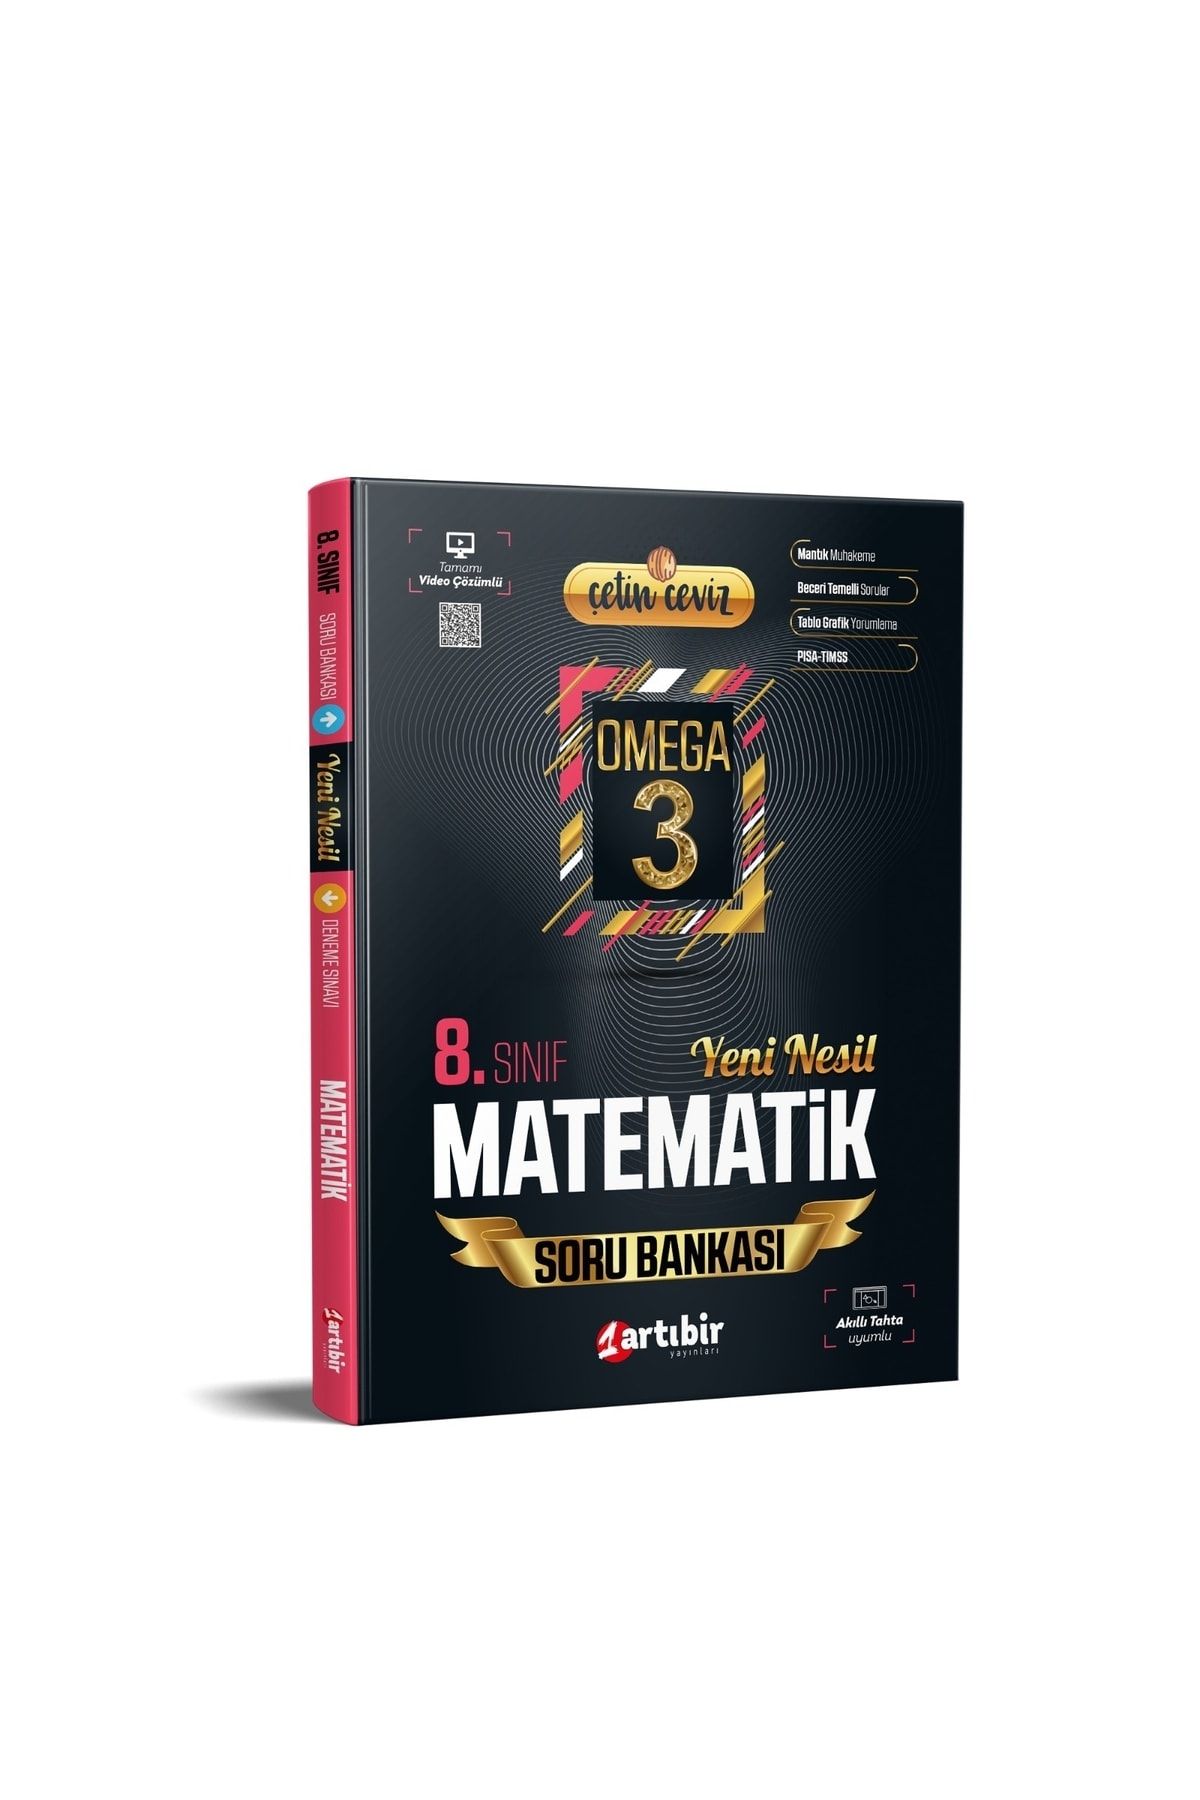 Artıbir Yayınları Yeni Nesil Omega 3 Çetin Ceviz 8. Sınıf Matematik